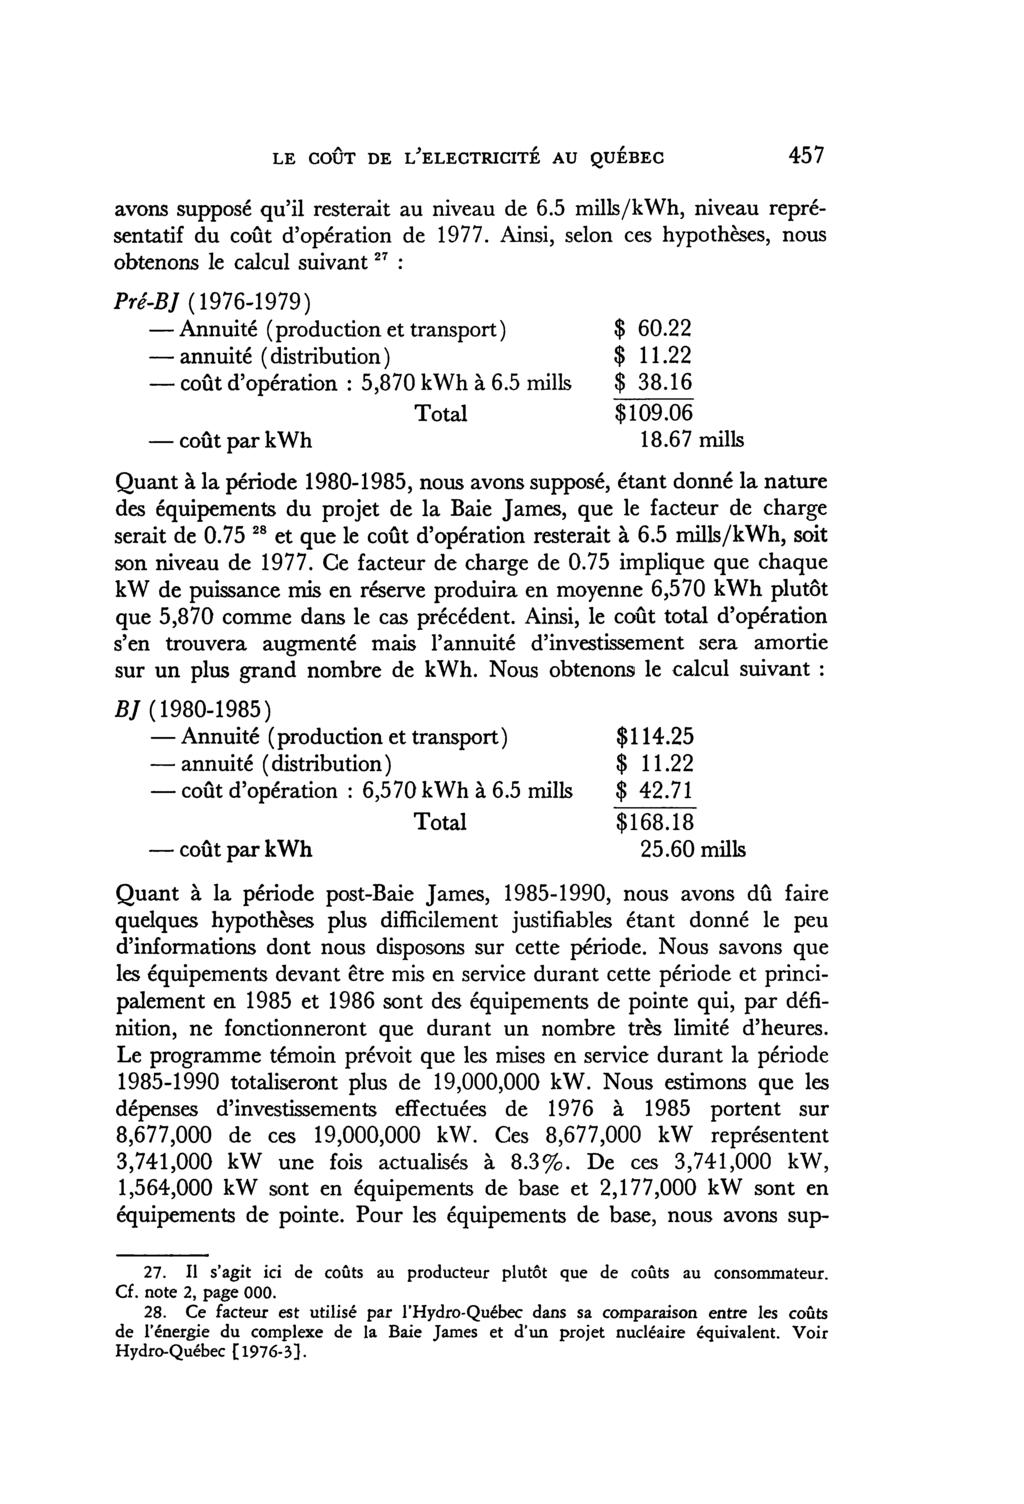 LE COÛT DE i/electricité AU QUEBEC 457 avons supposé qu'il resterait au niveau de 6.5 mills/kwh, niveau représentatif du coût d'opération de 1977.